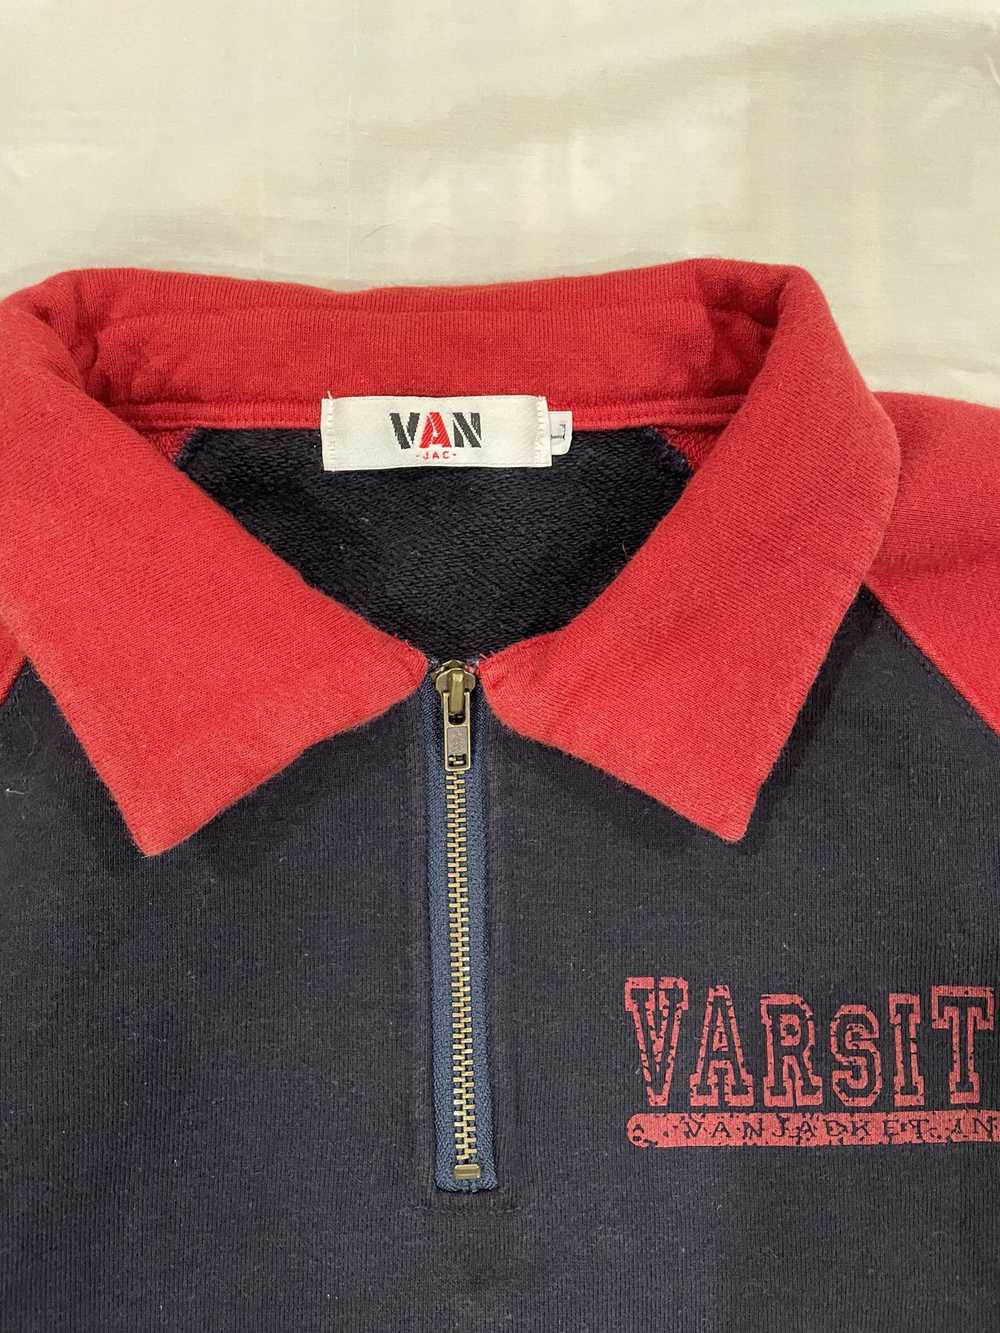 Japanese Brand × Van Van Jacket Varsity - image 2